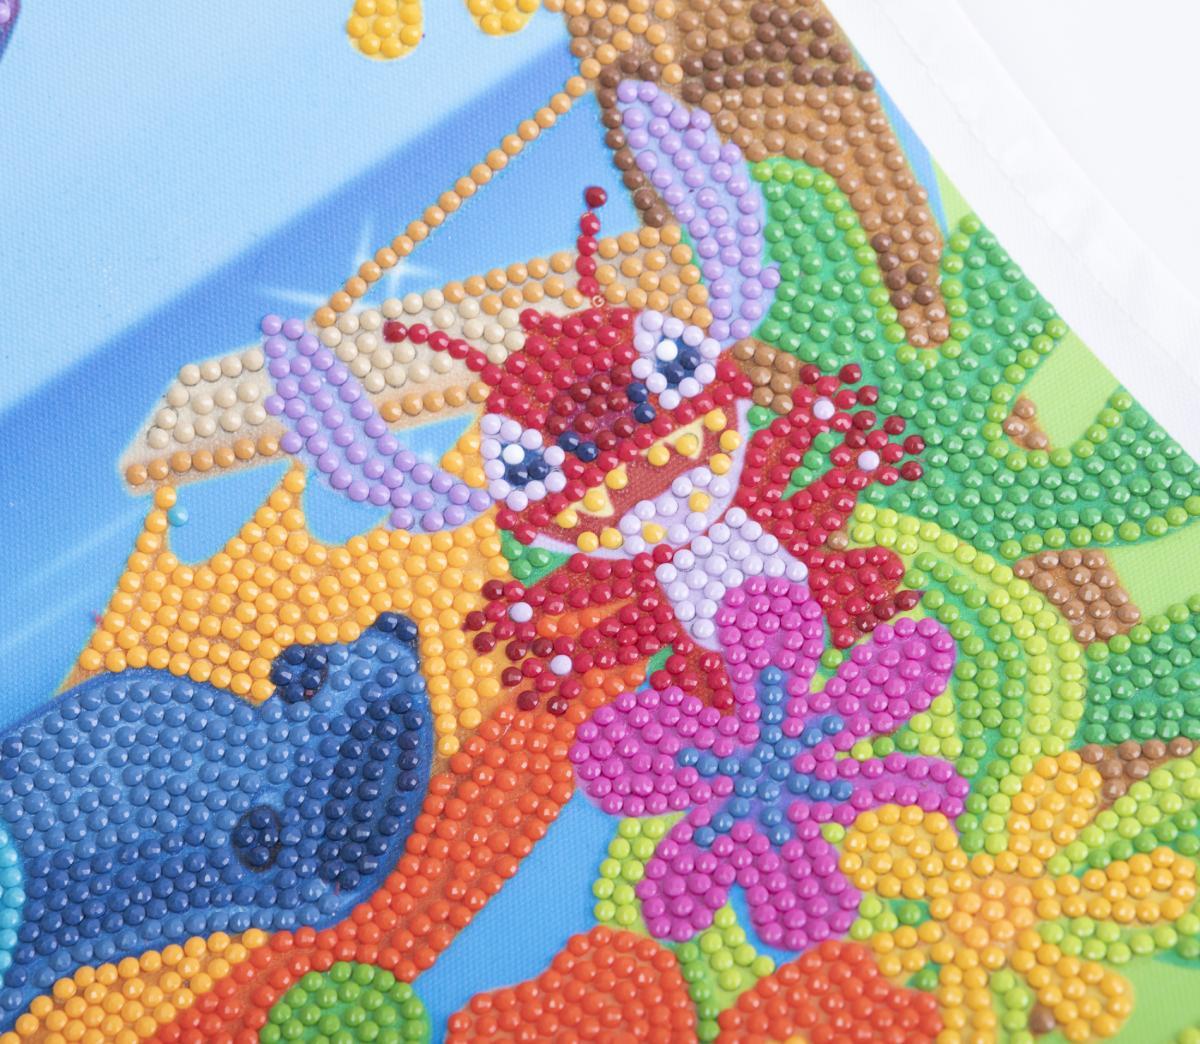 Disney Stitch 35x45cm Crystal Art Scroll